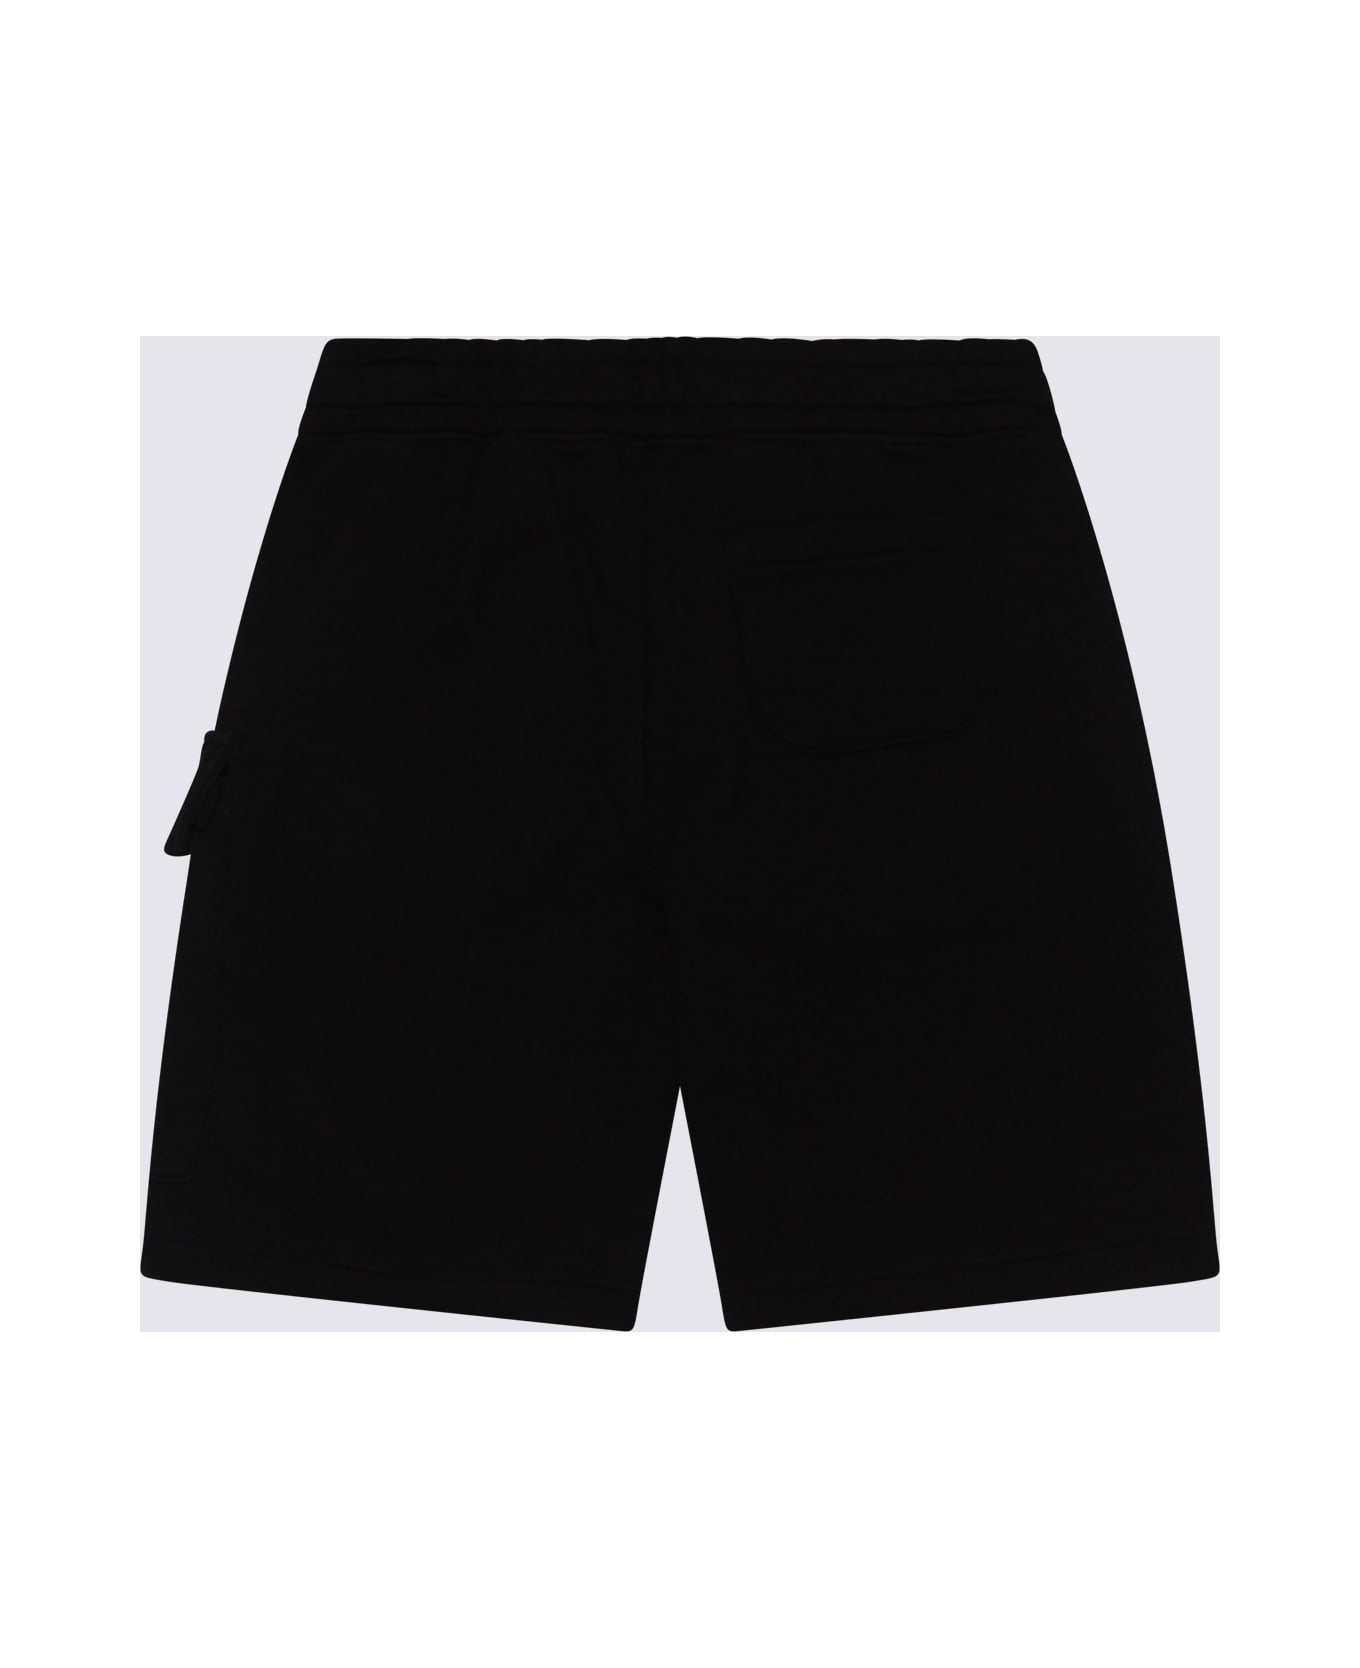 C.P. Company Black Cotton Bermuda Shorts - NERO/BLACK